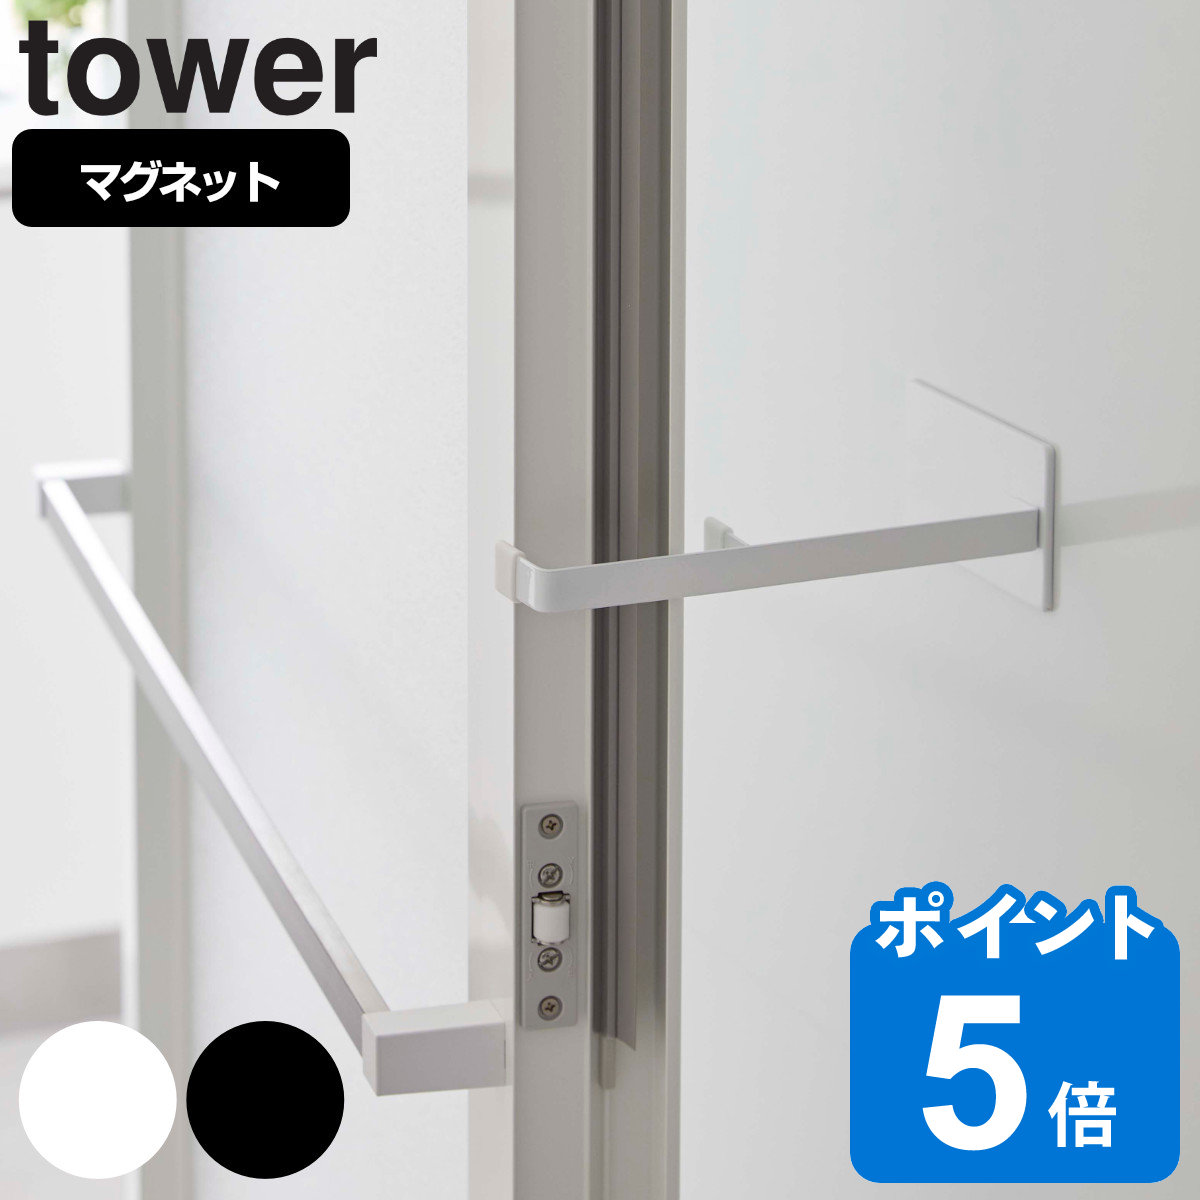 tower マグネット浴室扉ストッパー タワー